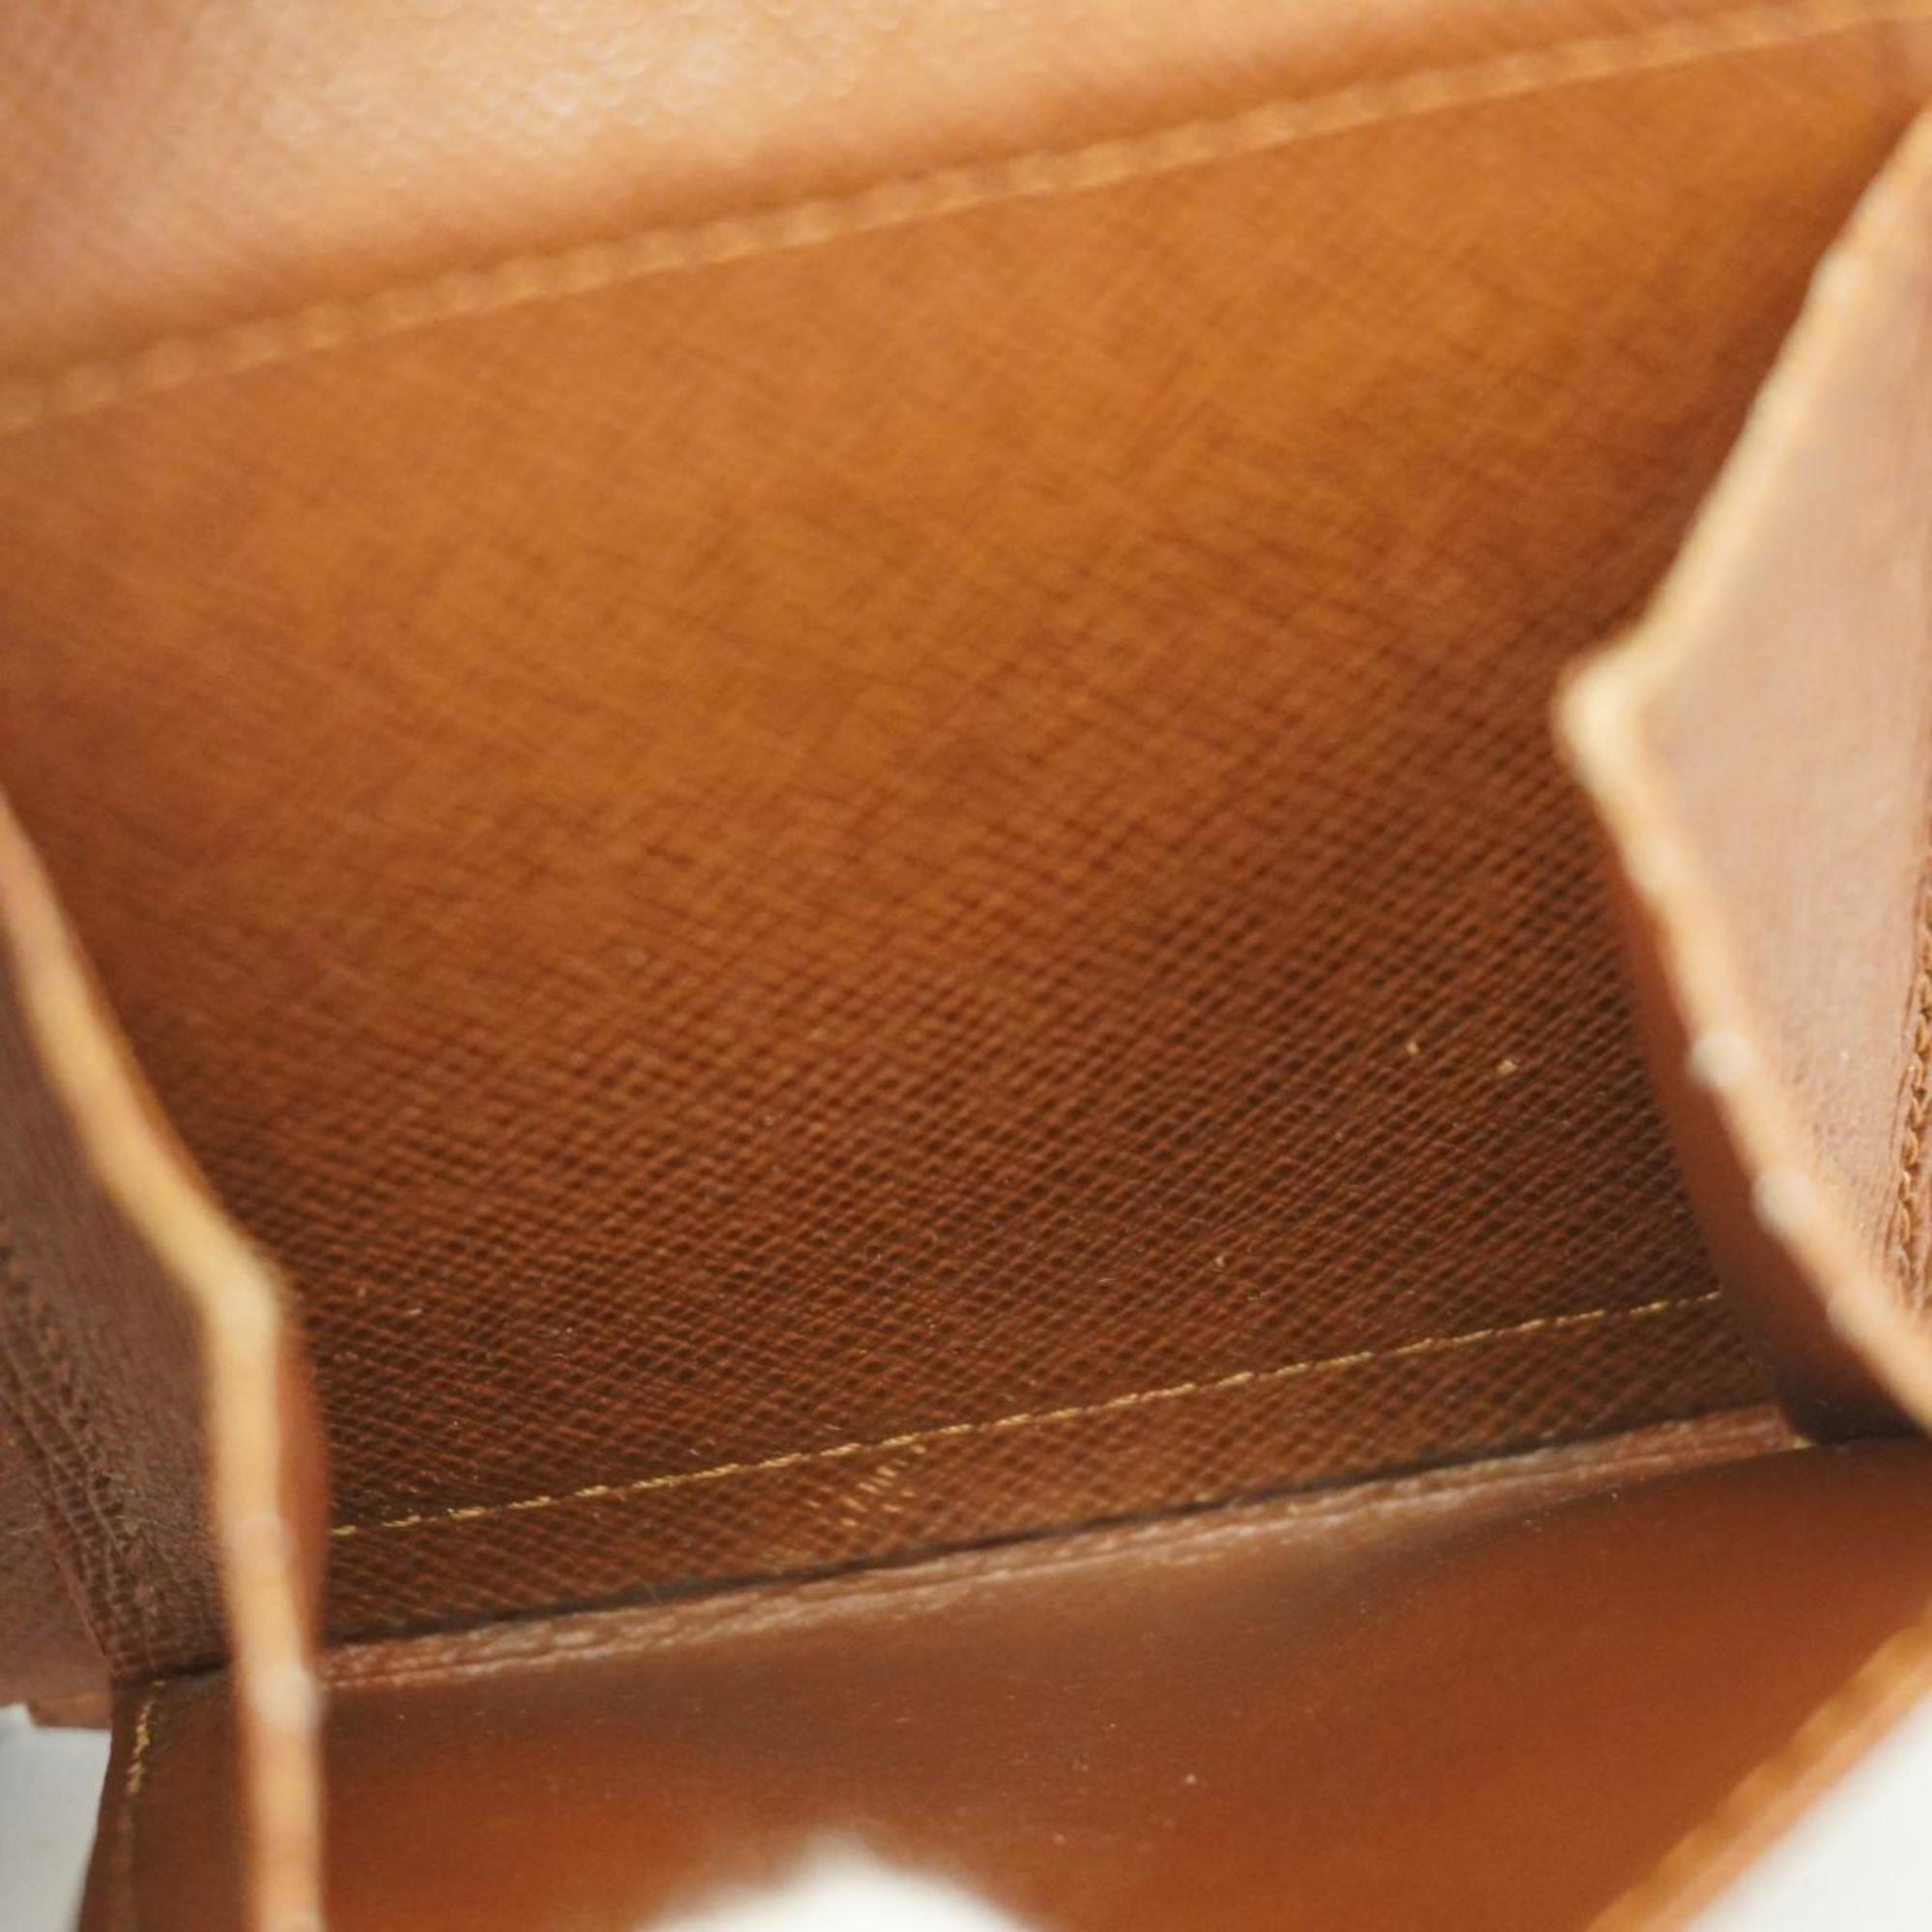 ルイ・ヴィトン(Louis Vuitton) ルイ・ヴィトン 財布 モノグラム ポルトビエ カルトクレディモネ M61665 ブラウンメンズ